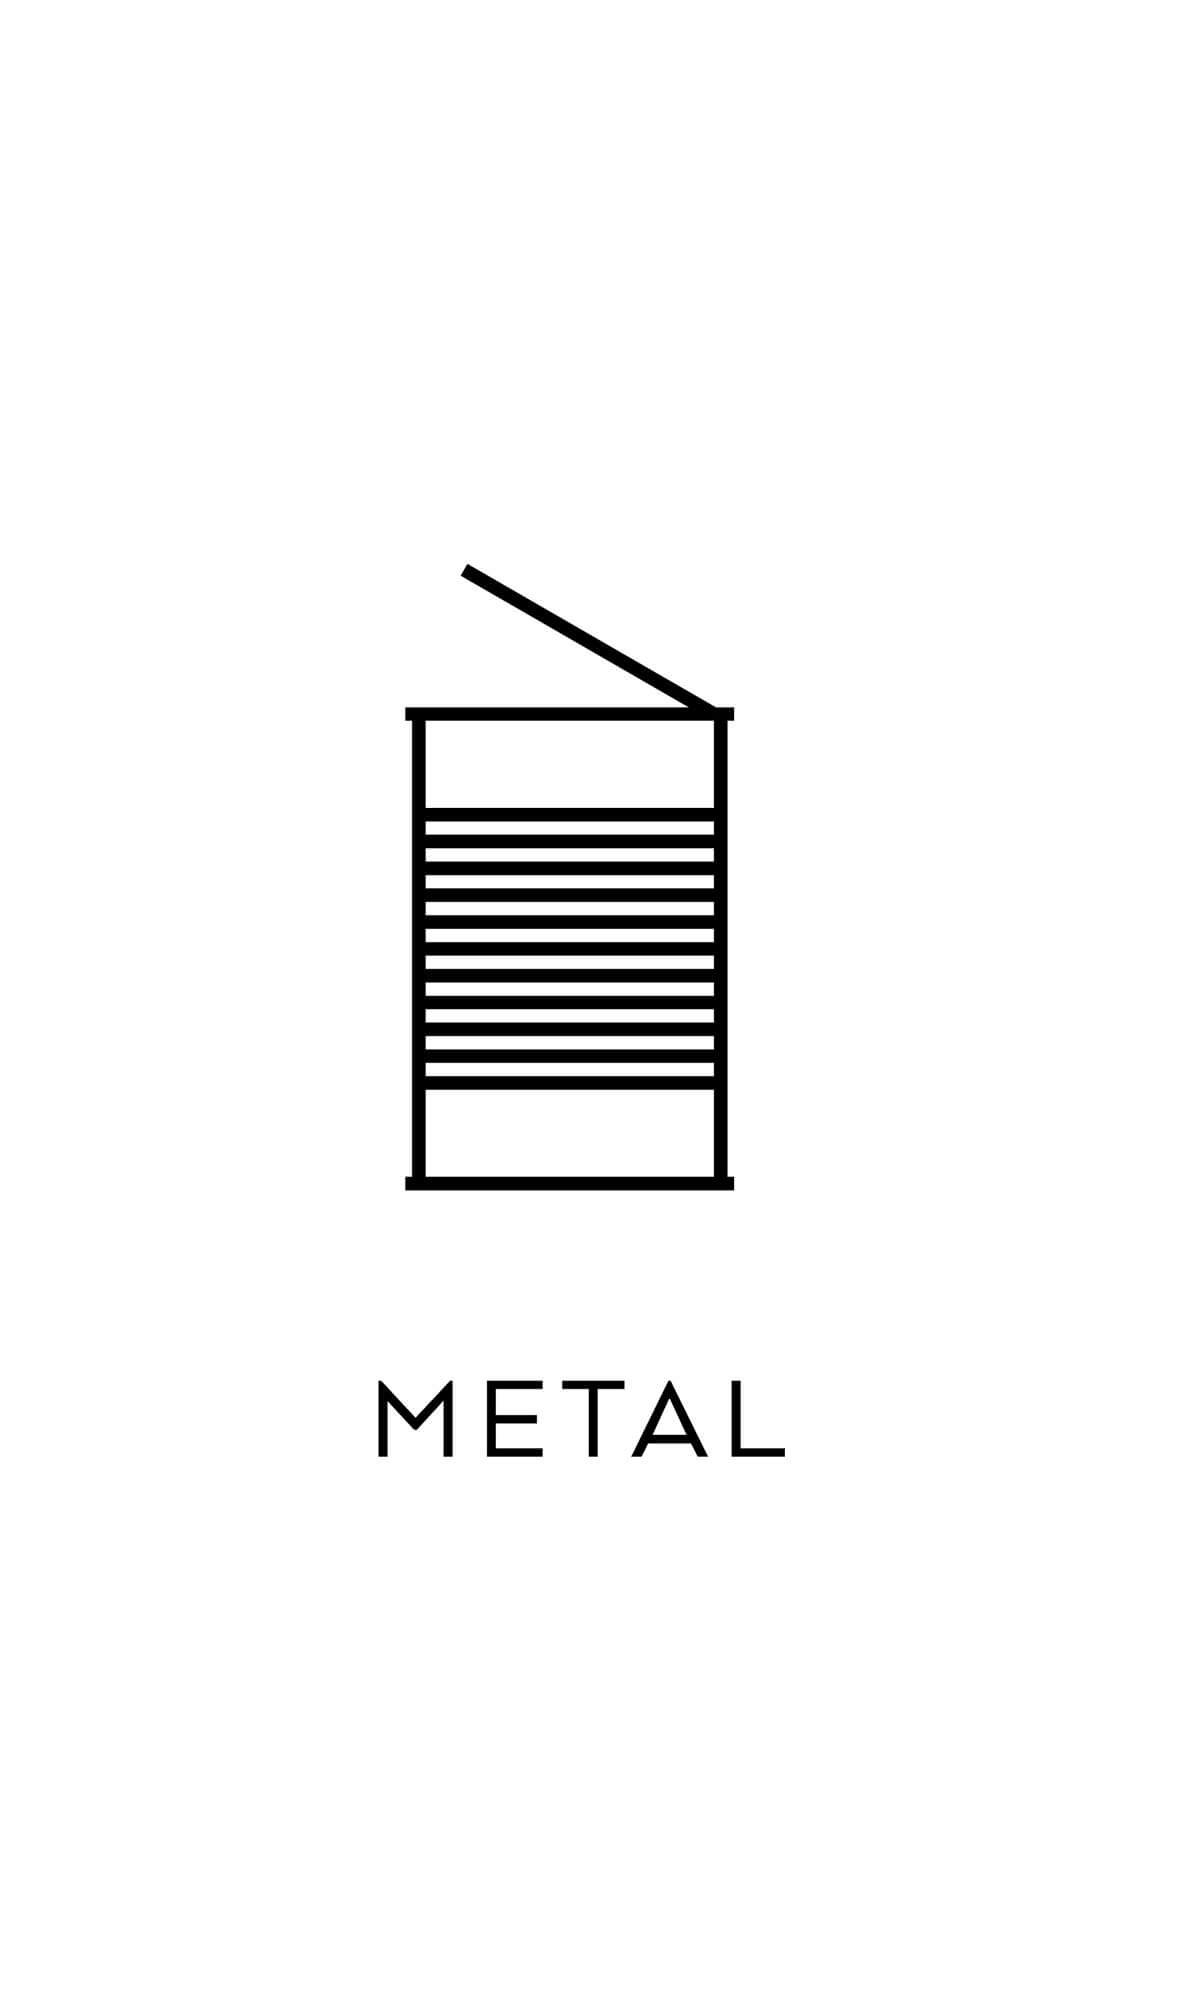 symbol källsortering metall konservburkar återvinning